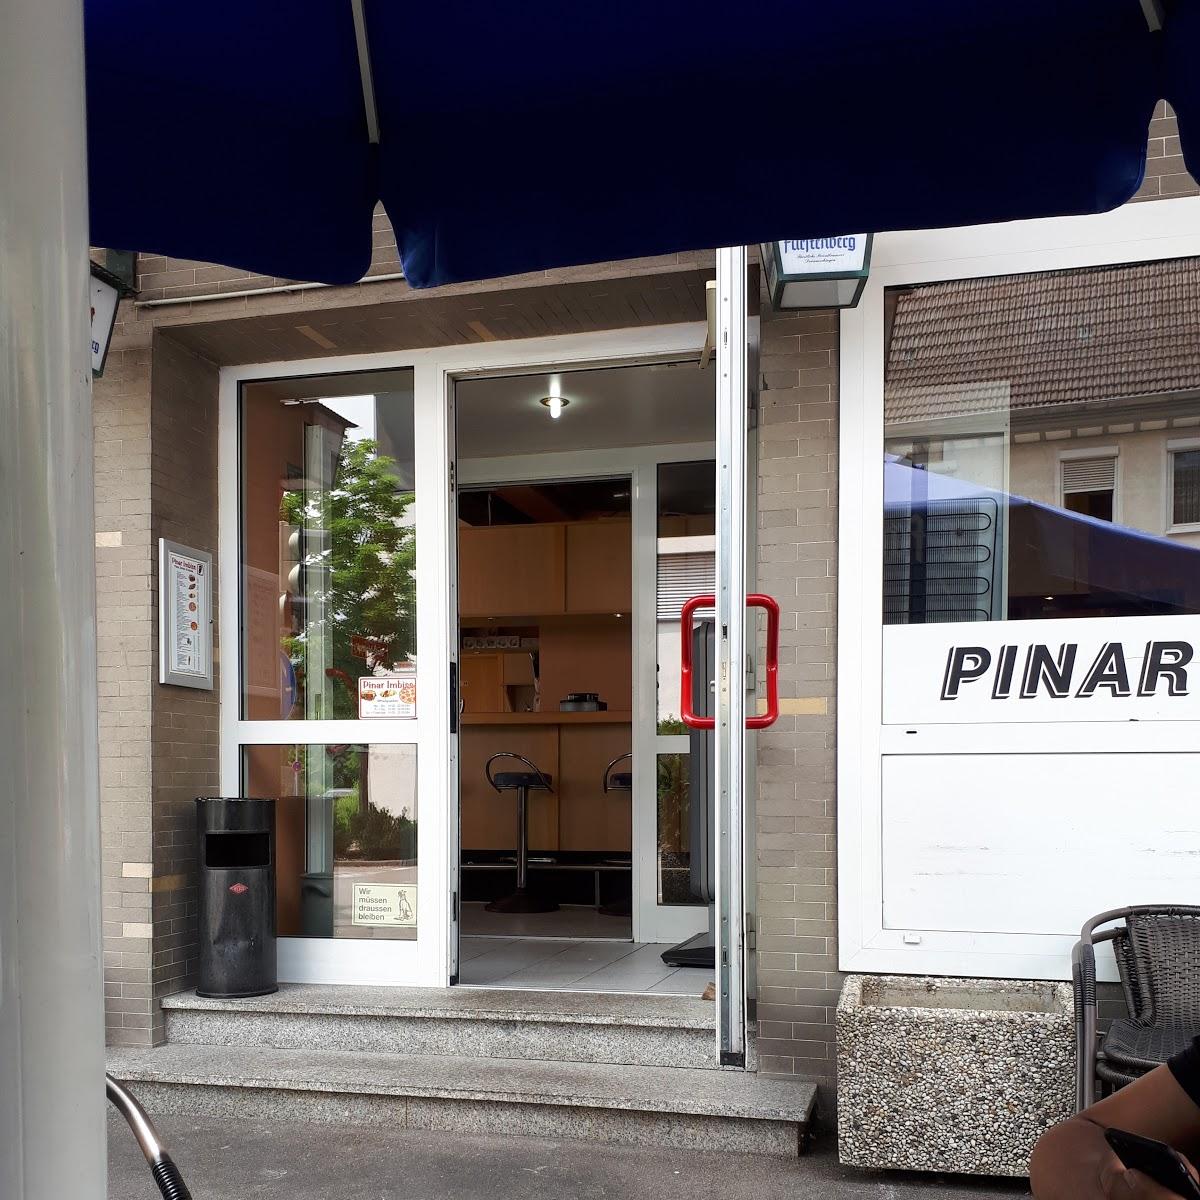 Restaurant "Pinar-Imbiss" in  Balingen